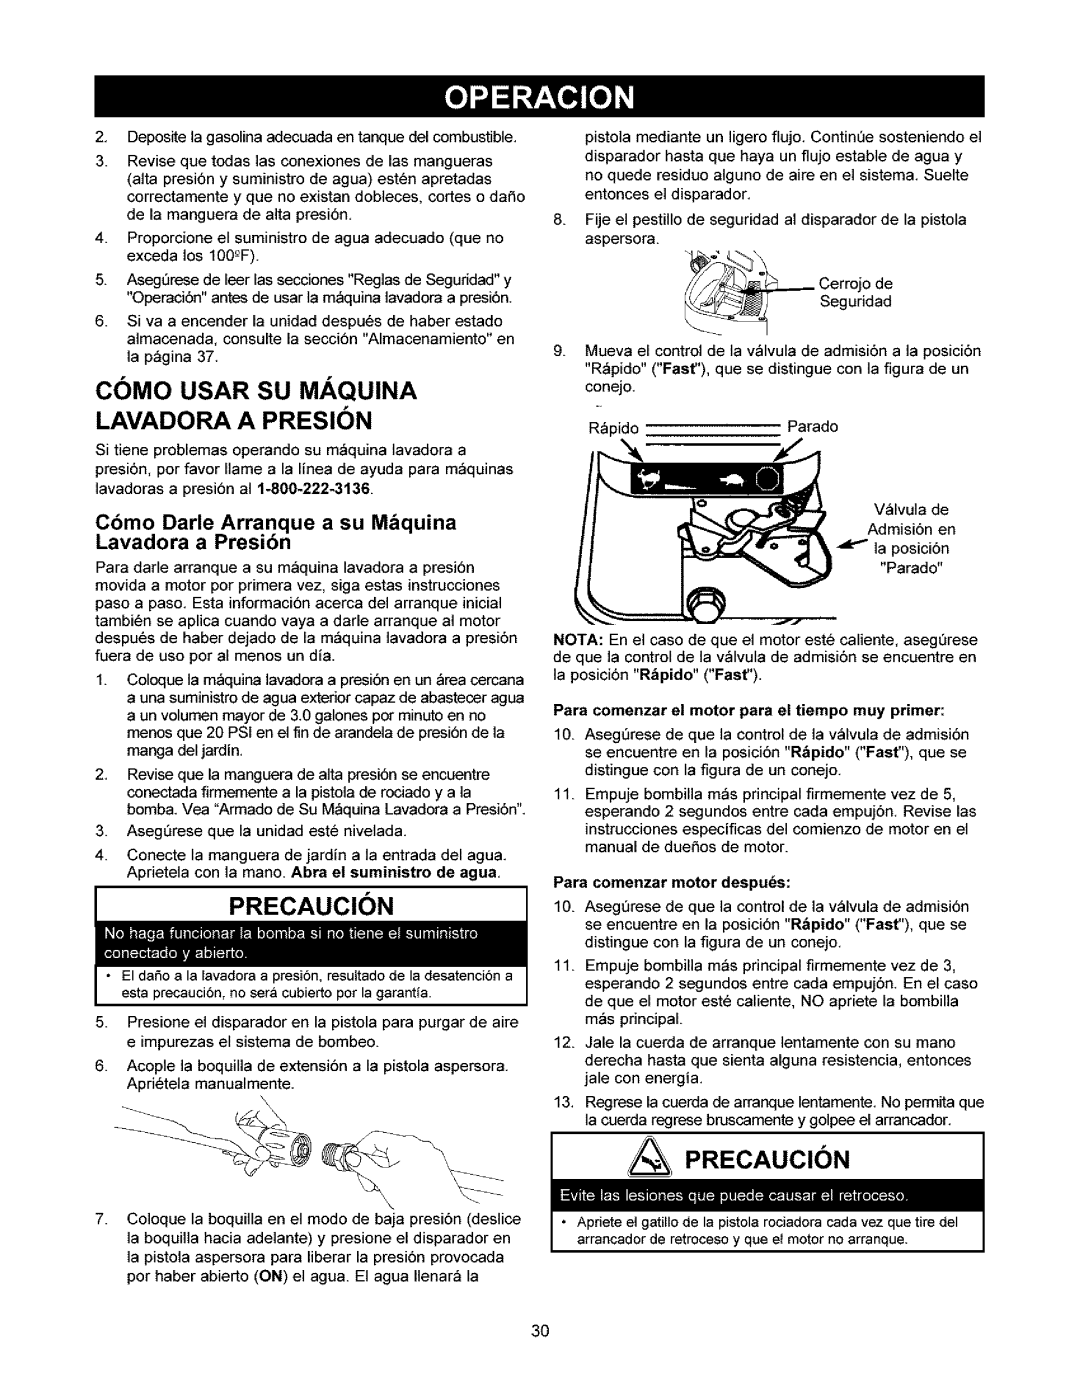 Craftsman 580.752 Como Usar Su Maquina Lavadora A Presion, PRECAUCI6N, Precaucion, Cbmo Darle Arranque a su M_quina 